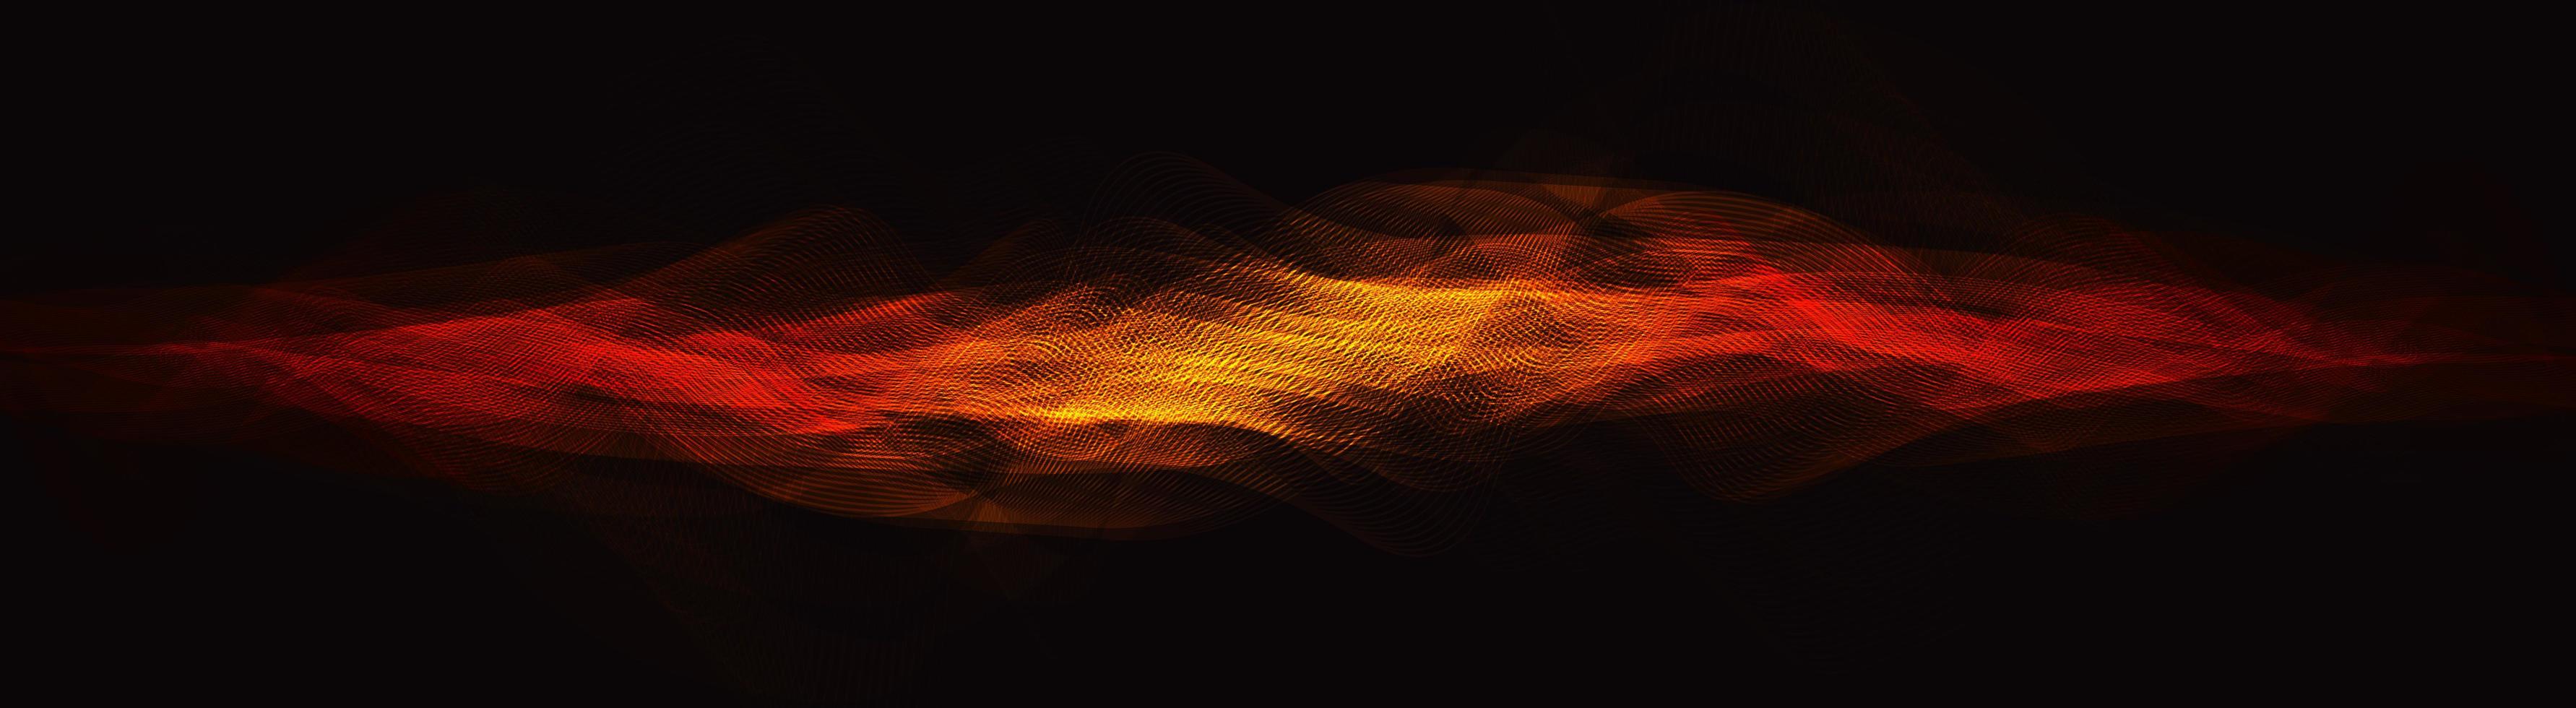 Flamme digitale Schallwelle auf braunem Hintergrund, Technologie-Wellen-Konzept, Entwurf für Musikstudio und Wissenschaft, Vektorillustration. vektor